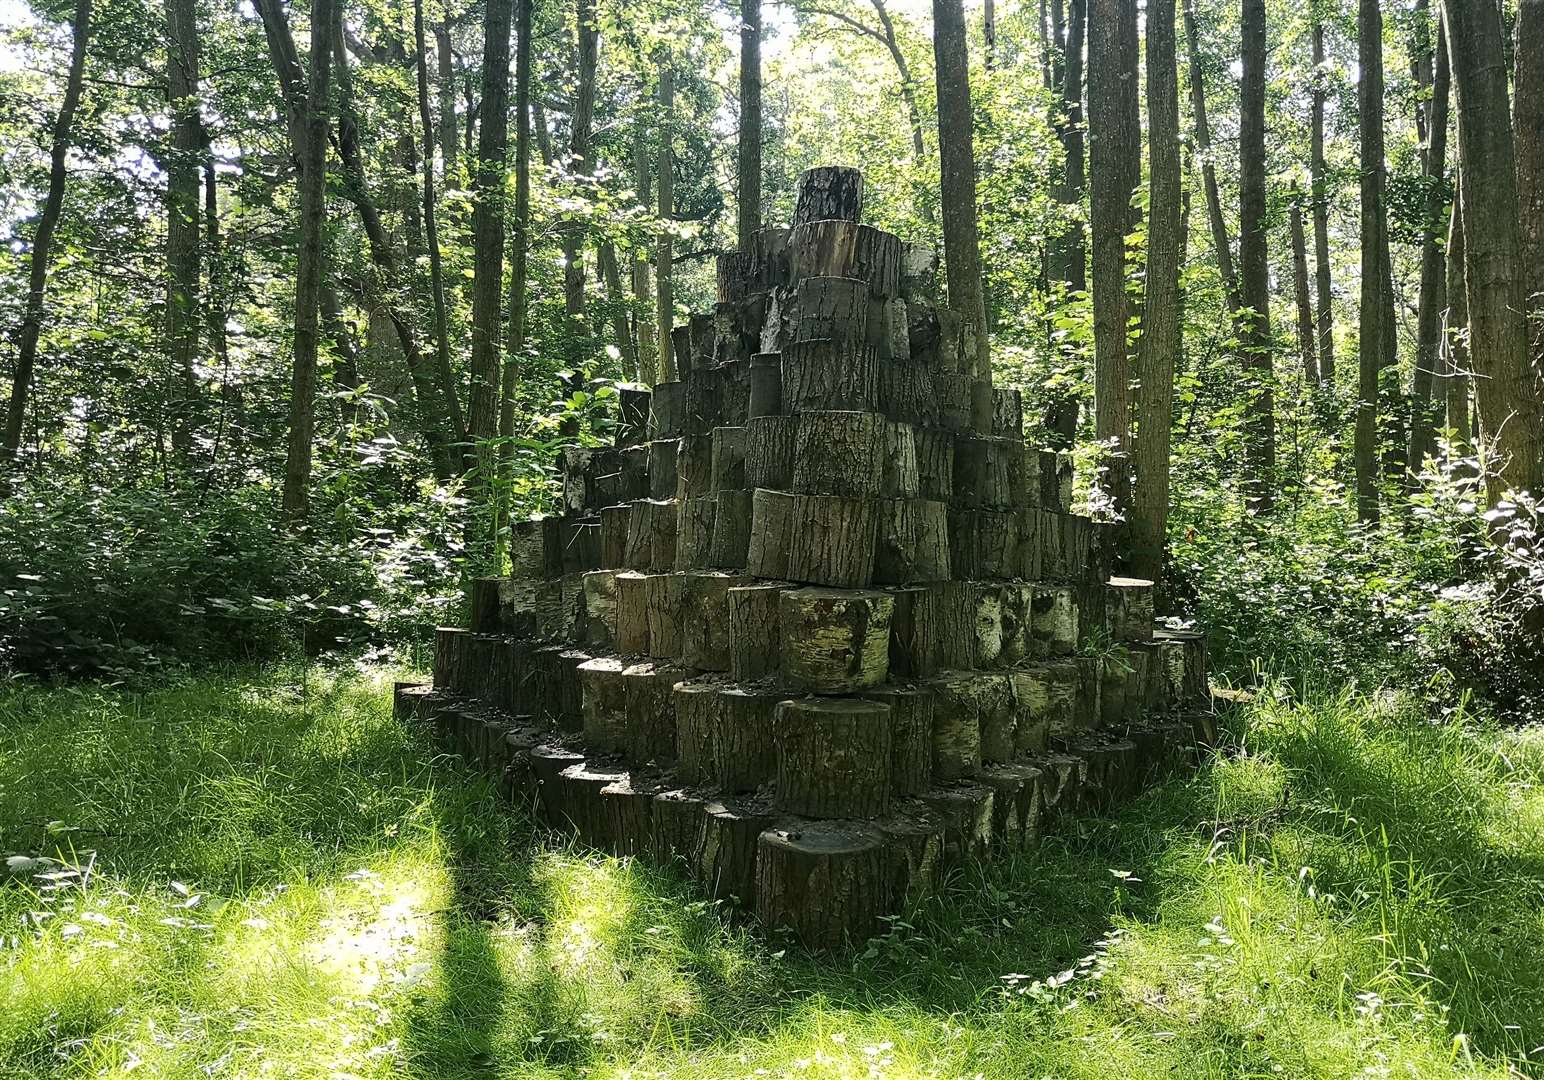 A log pyramid at Penshurst Place